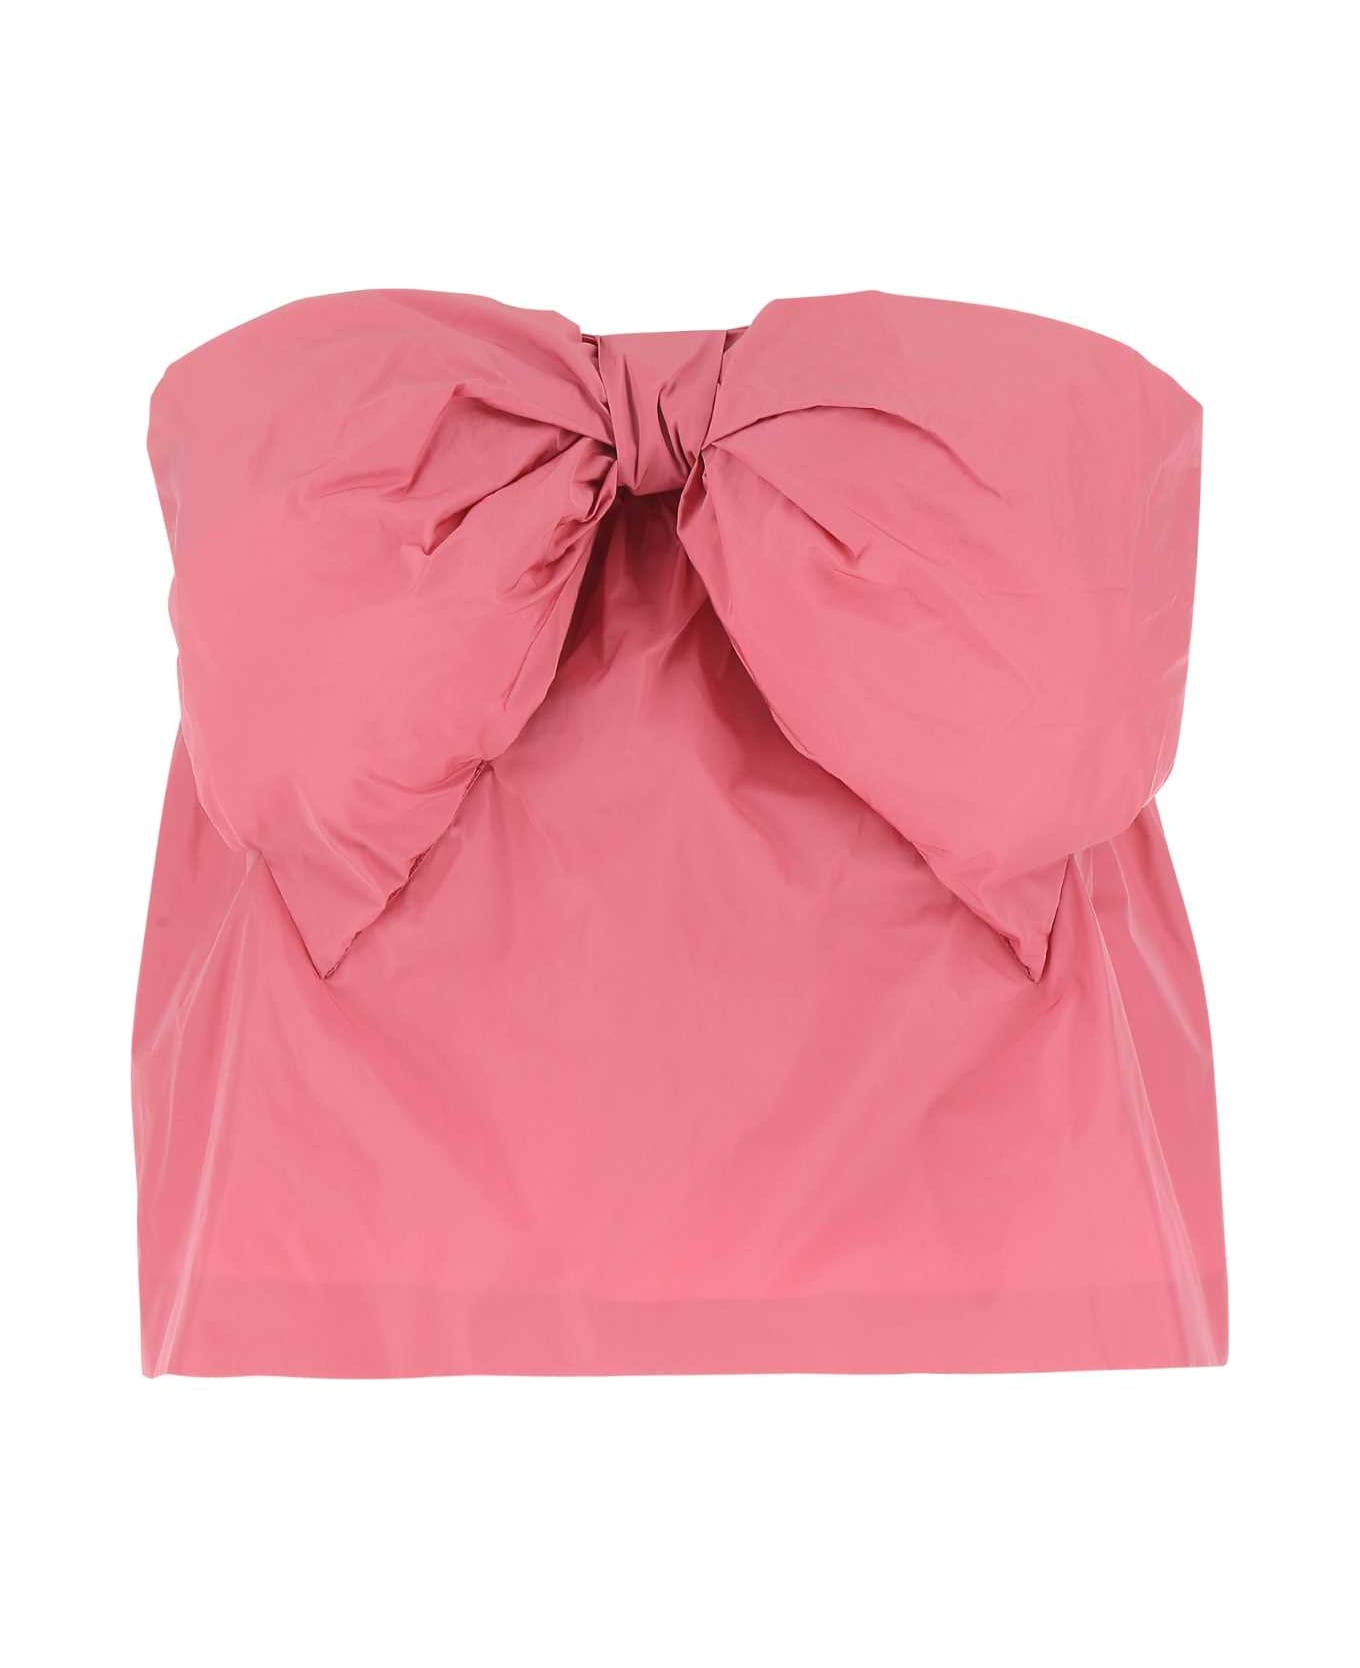 RED Valentino Dark Pink Taffeta Pant-skirt - P77